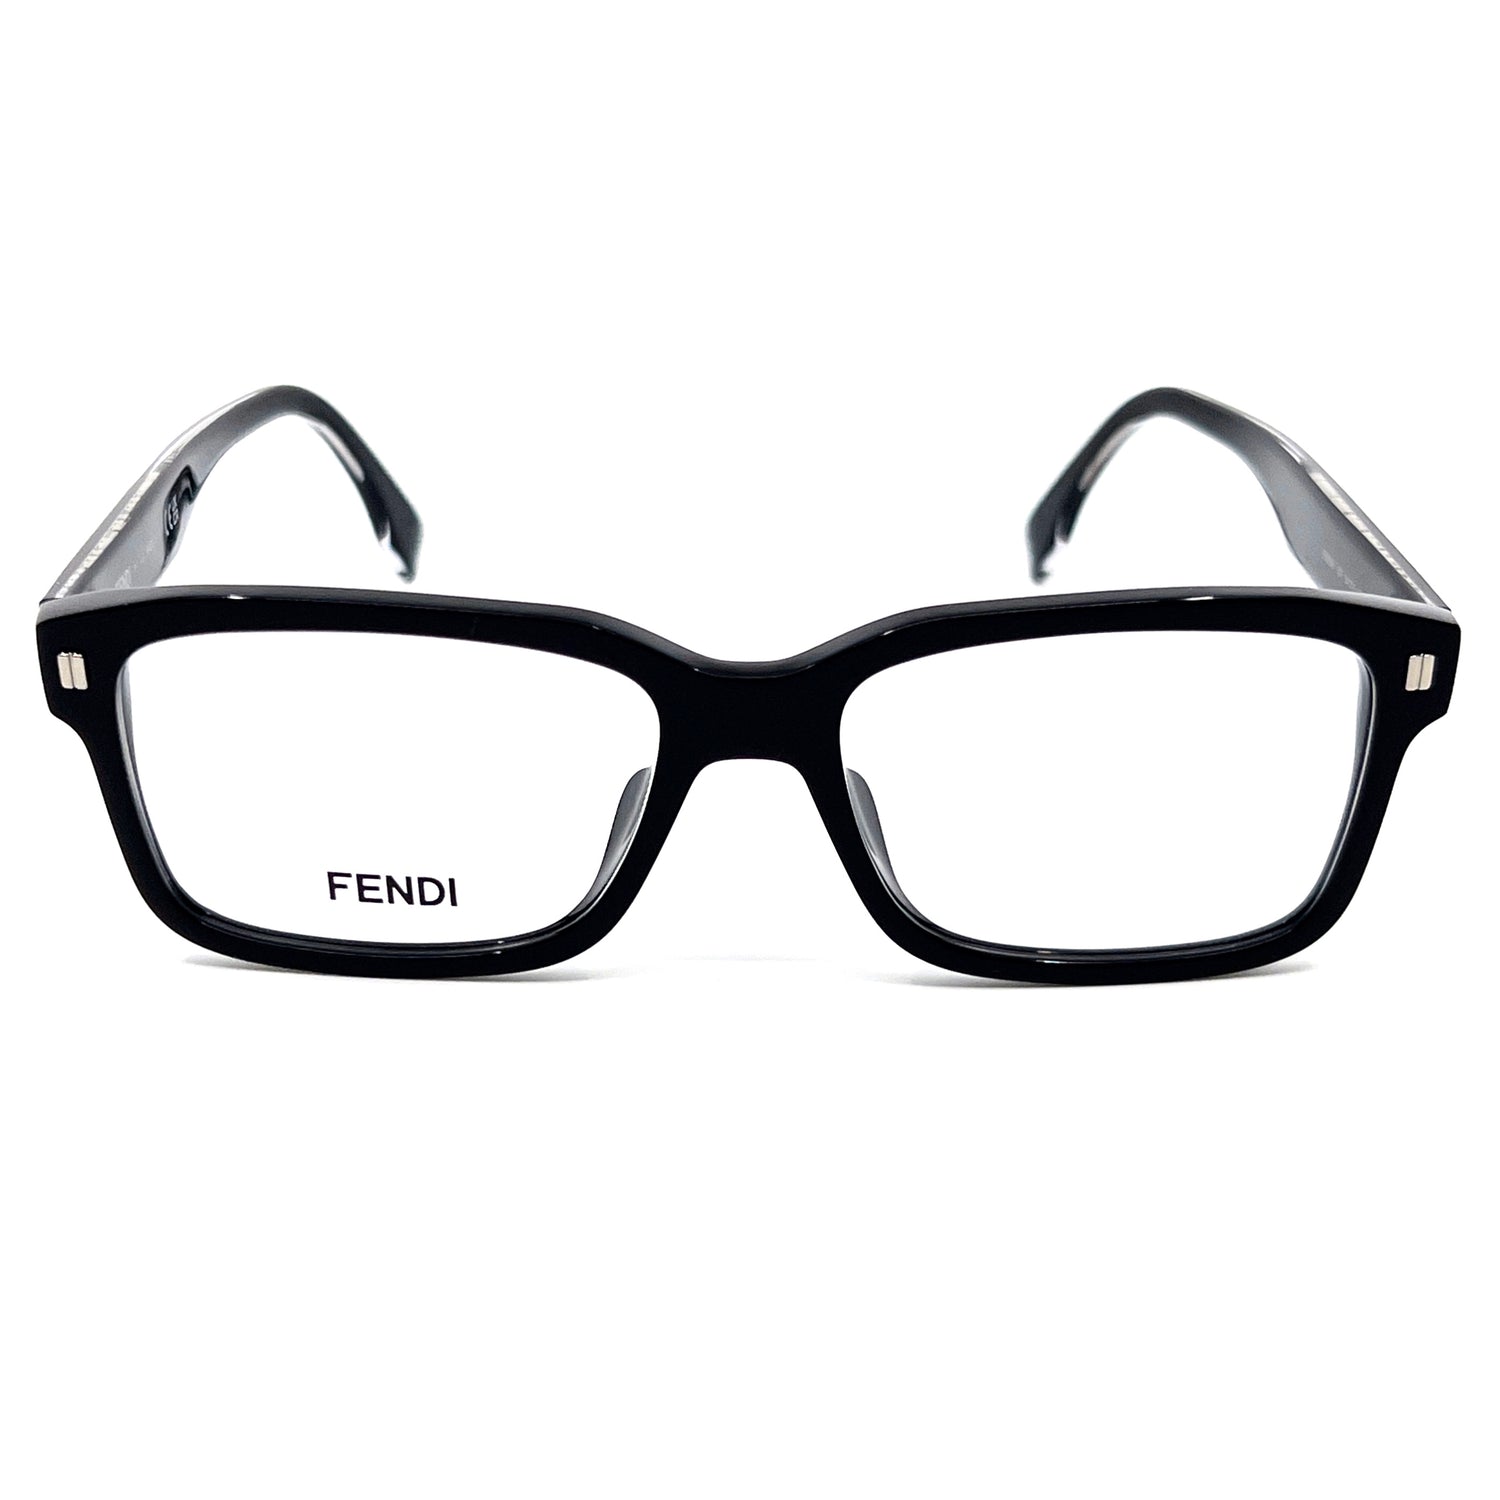 Fendi Eye Frames